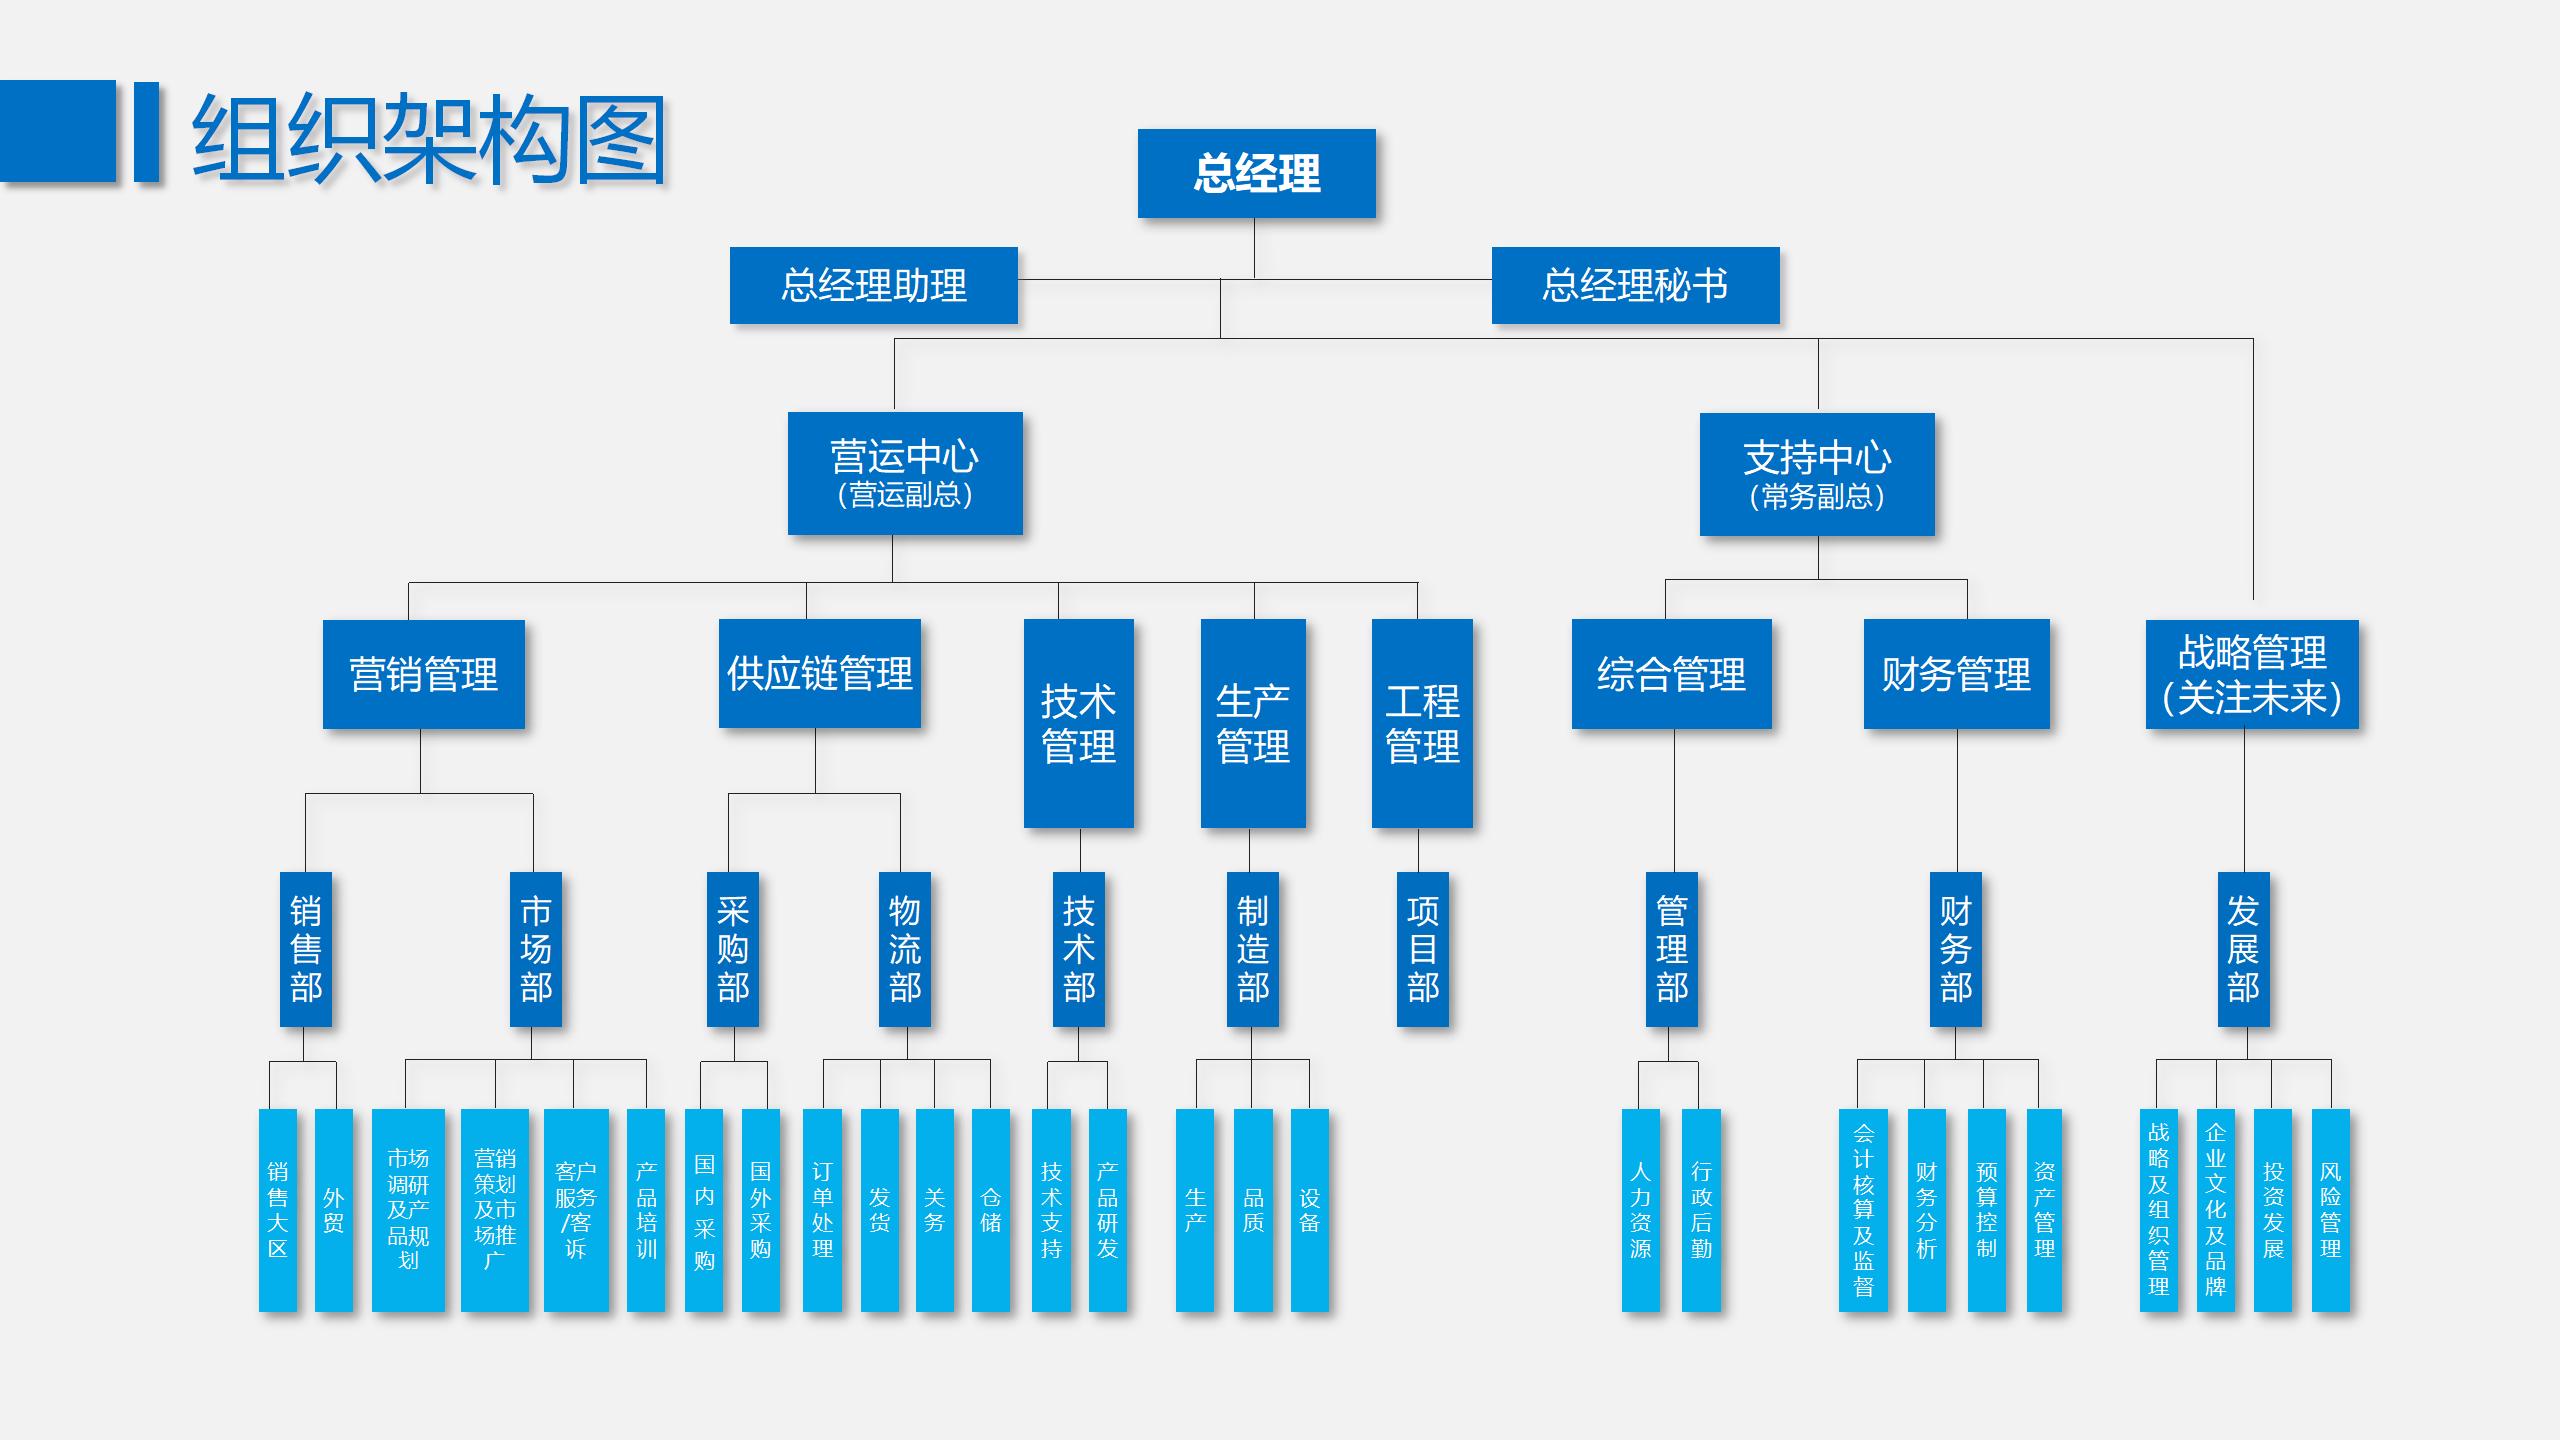 23 蓝色简约企业组织架构图PPT模板_04.jpg